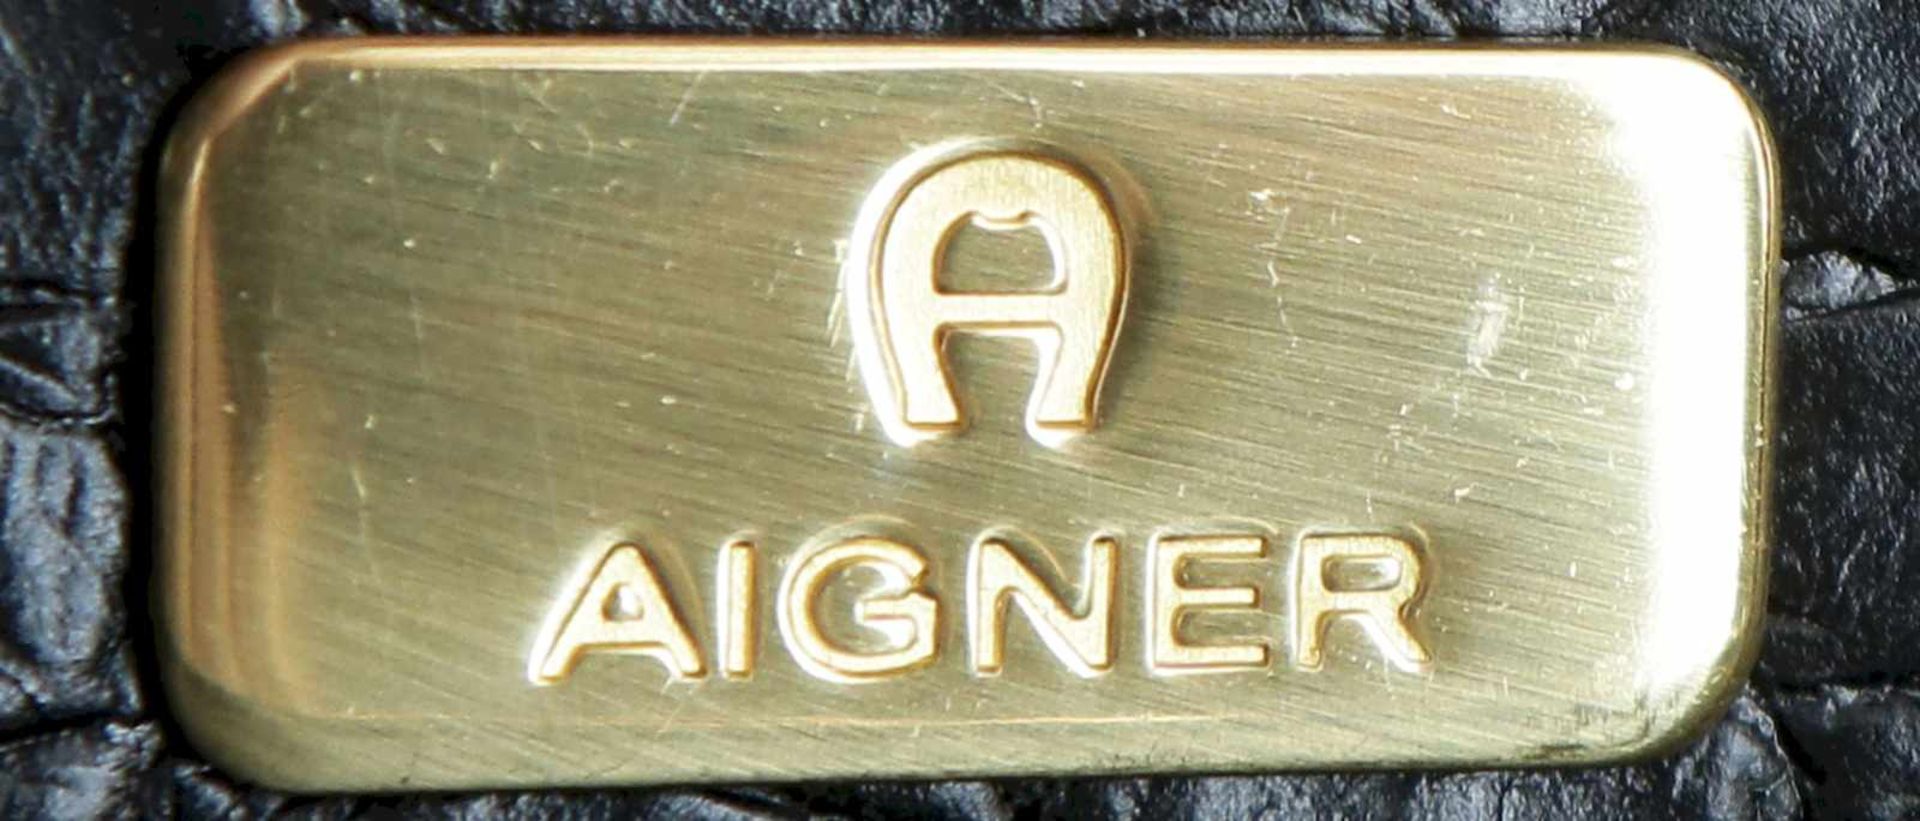 AIGNER Handtascheschwarzes Leder (Krokoprägung), vergoldete Metallapplikationen, 1 Druckknopf, innen - Bild 2 aus 2